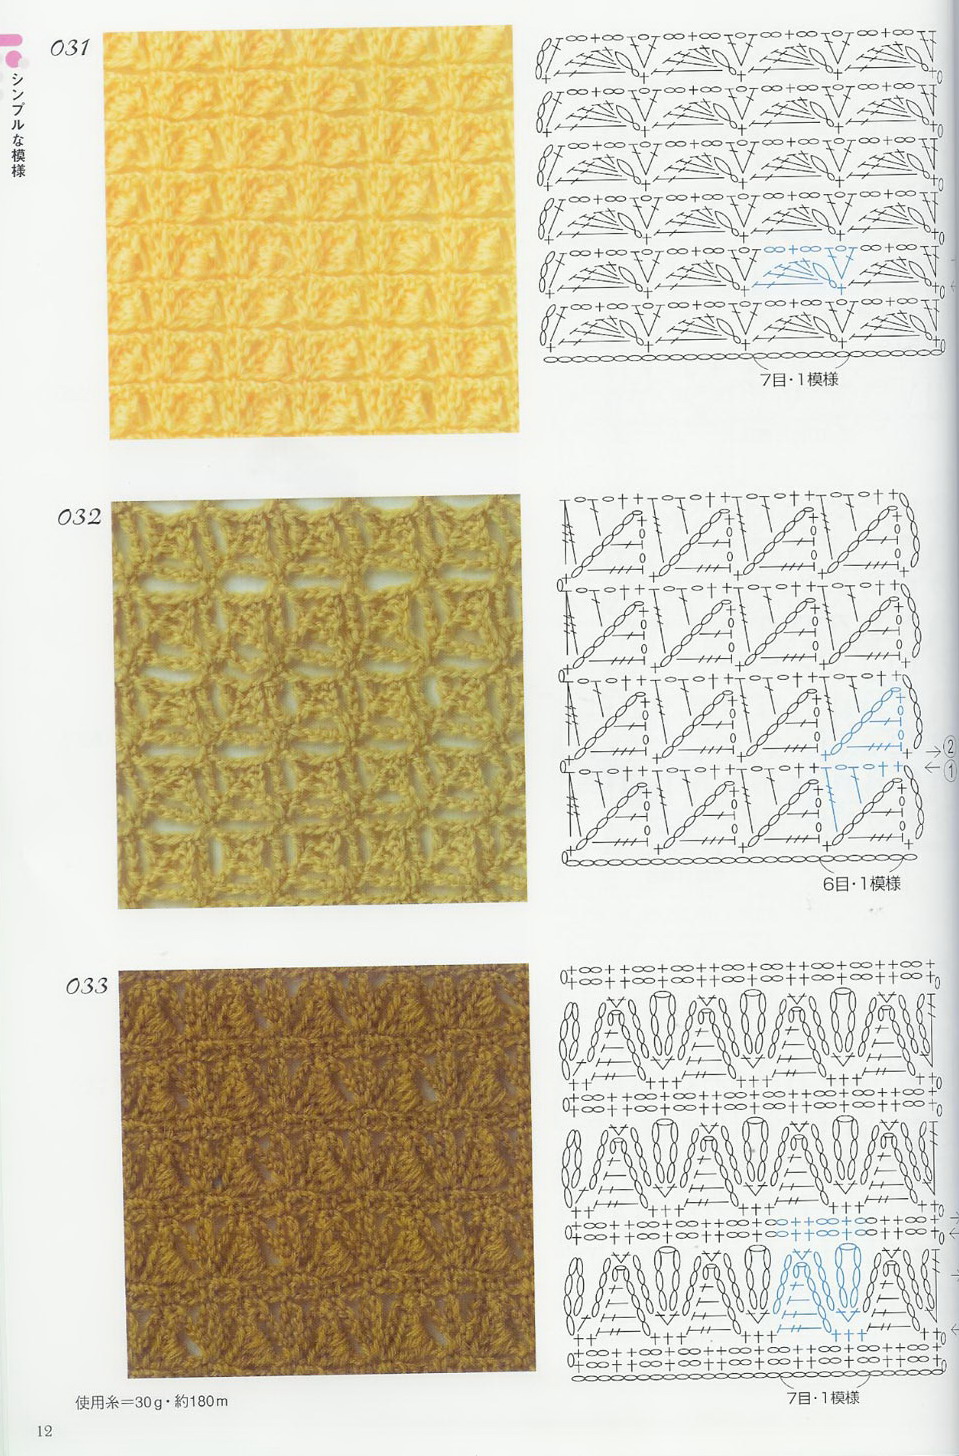 crochet stitches (307)